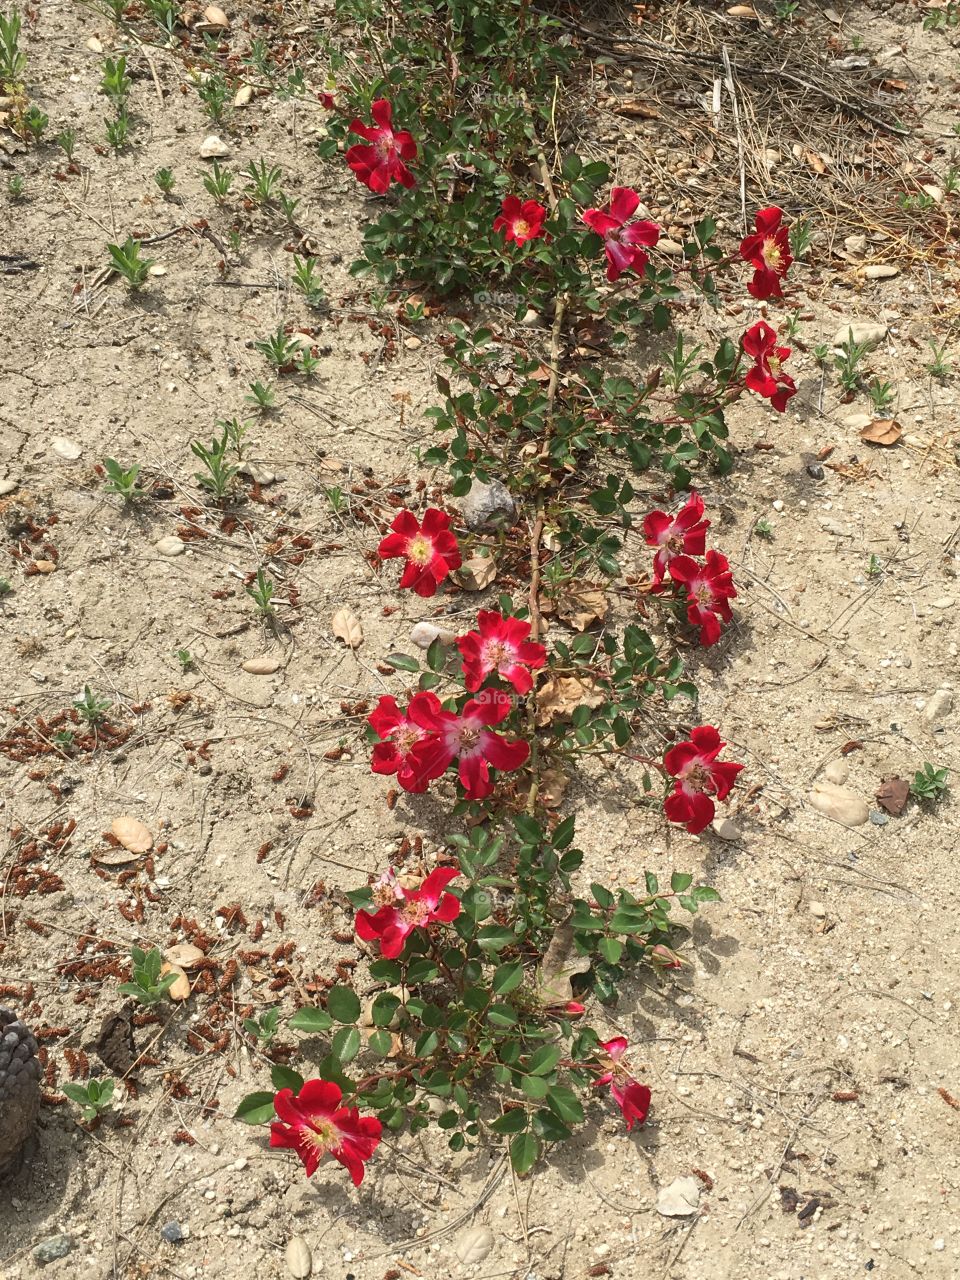 Desert roses